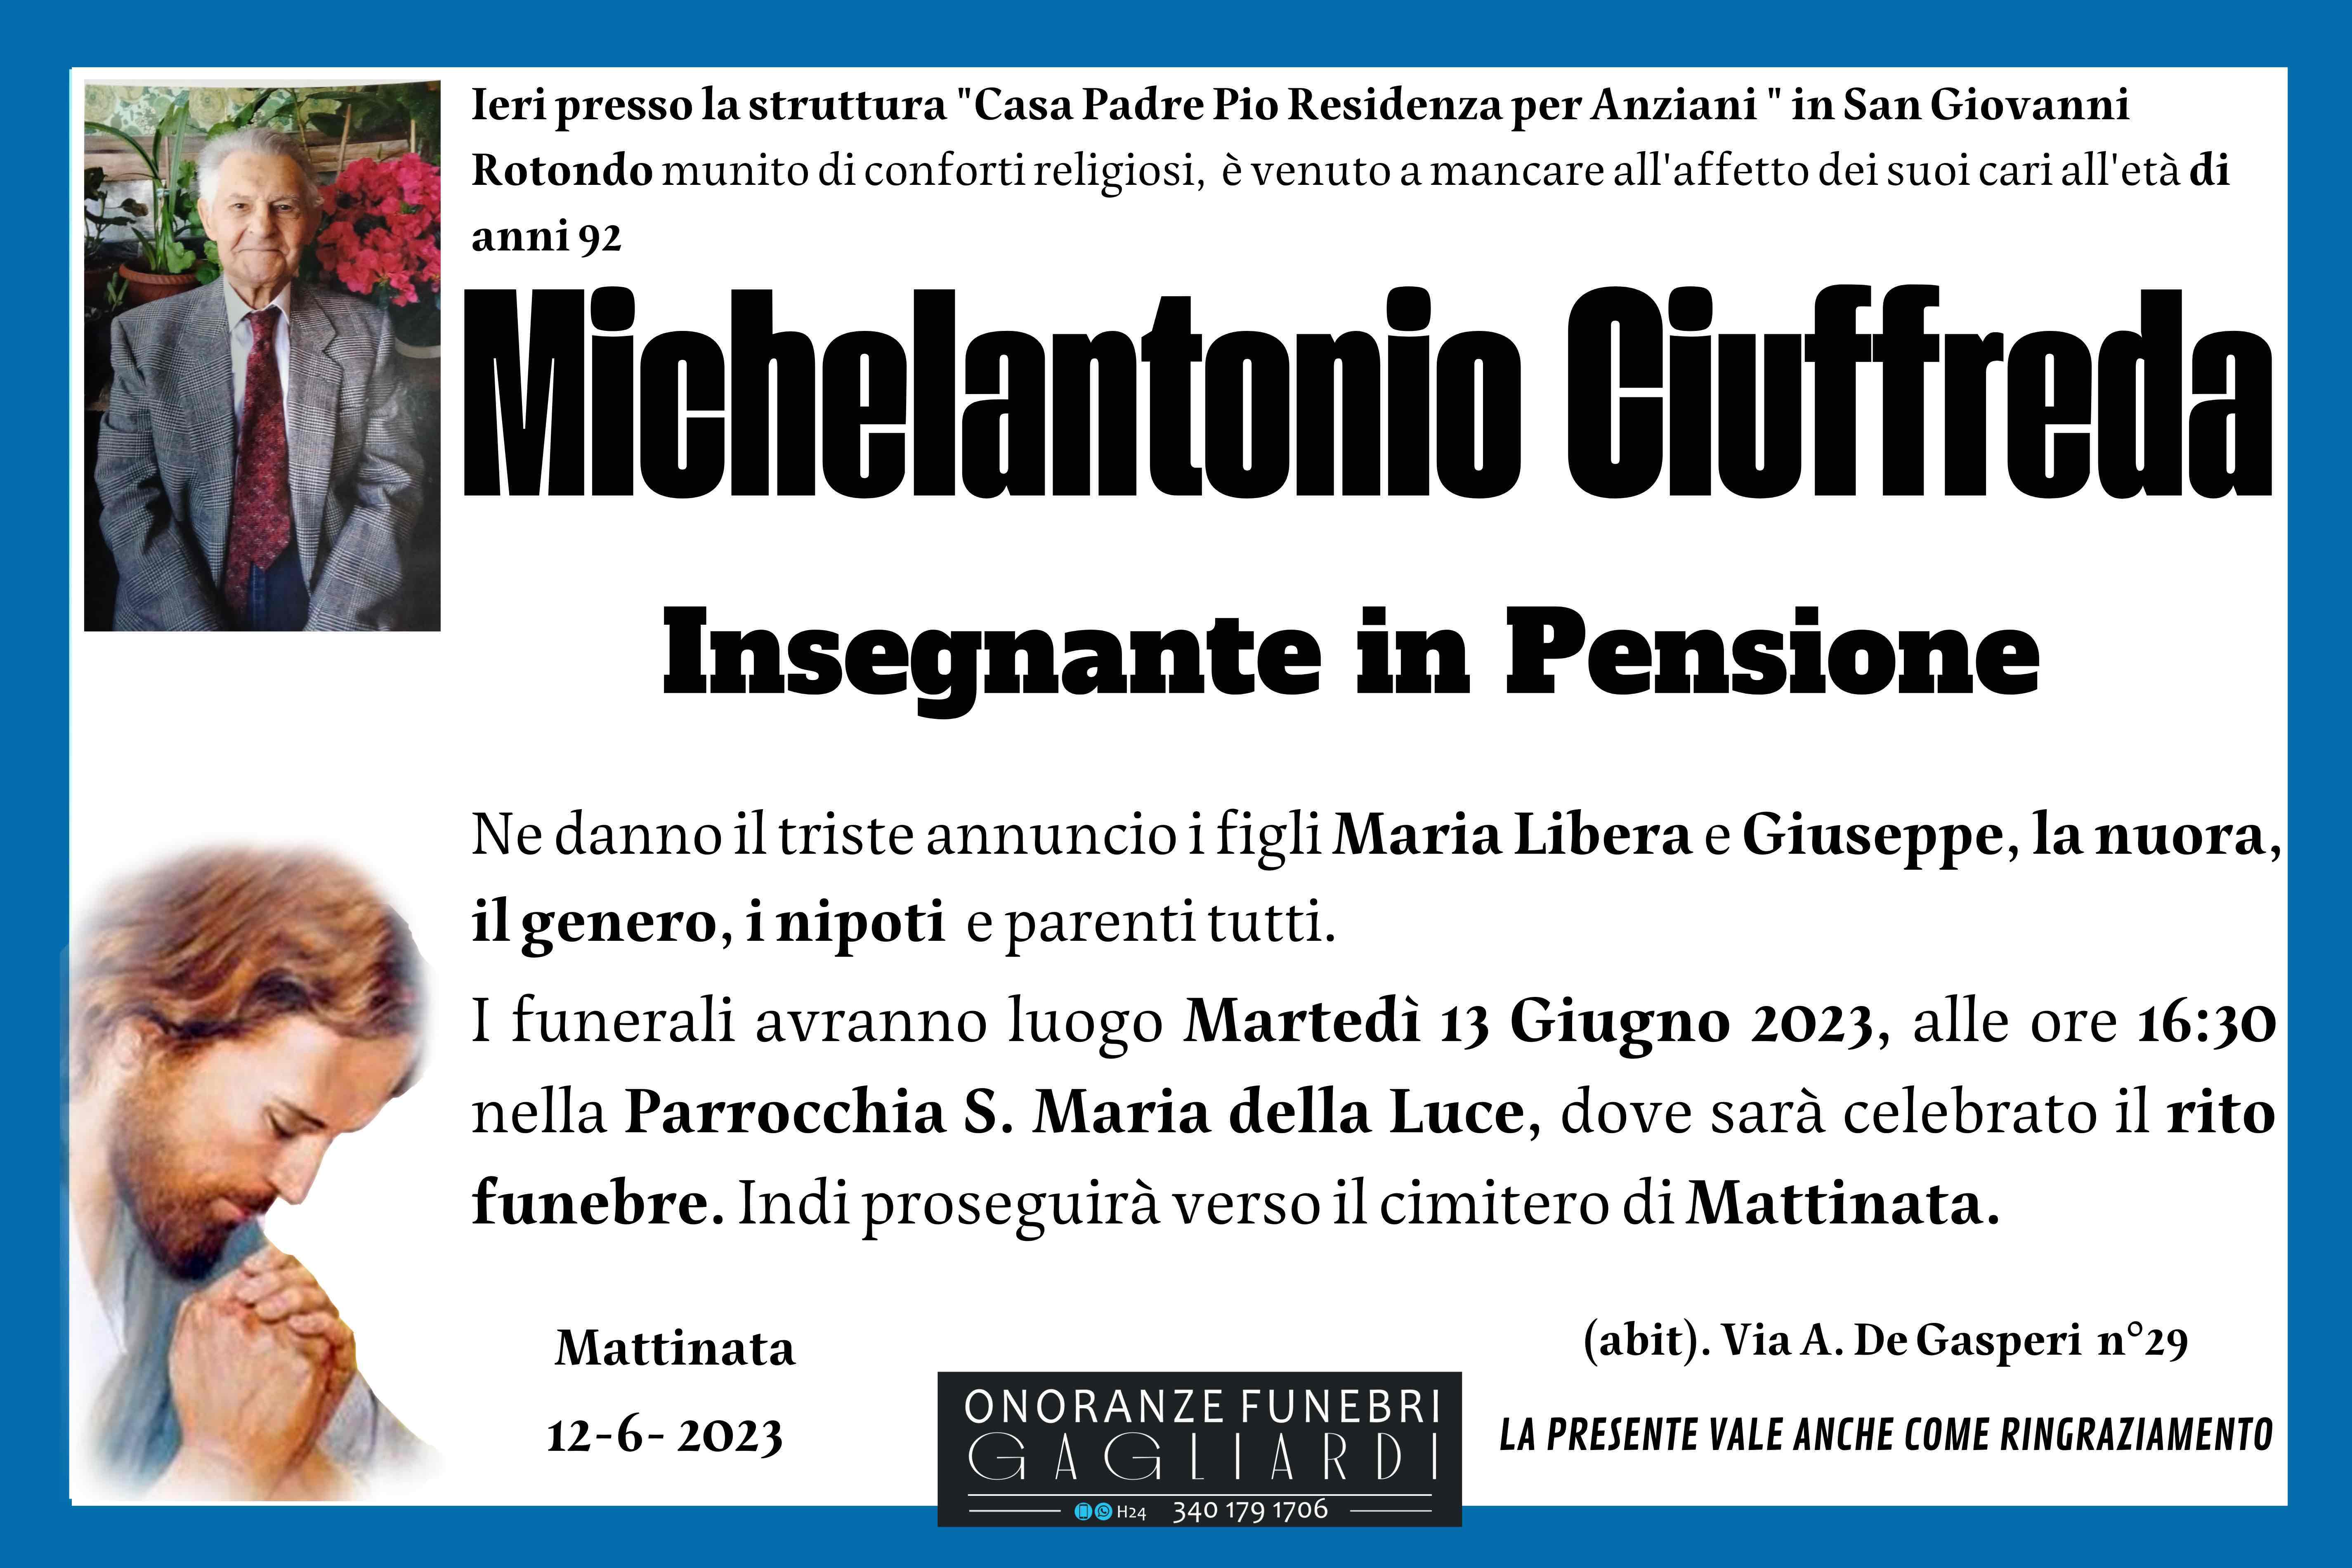 Michelantonio Ciuffreda